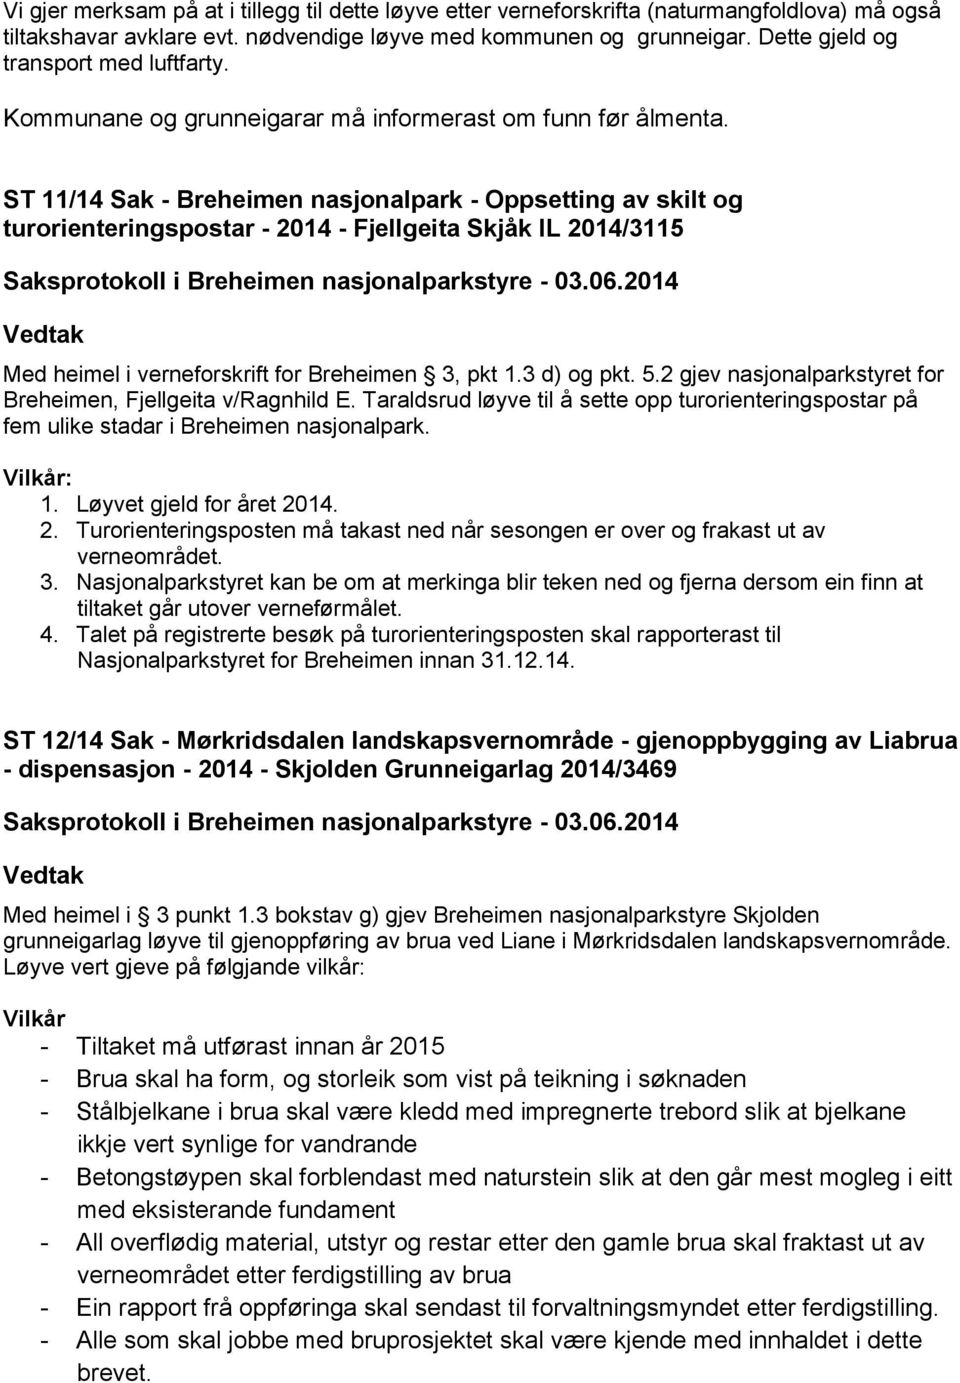 ST 11/14 Sak - Breheimen nasjonalpark - Oppsetting av skilt og turorienteringspostar - 2014 - Fjellgeita Skjåk IL 2014/3115 Med heimel i verneforskrift for Breheimen 3, pkt 1.3 d) og pkt. 5.